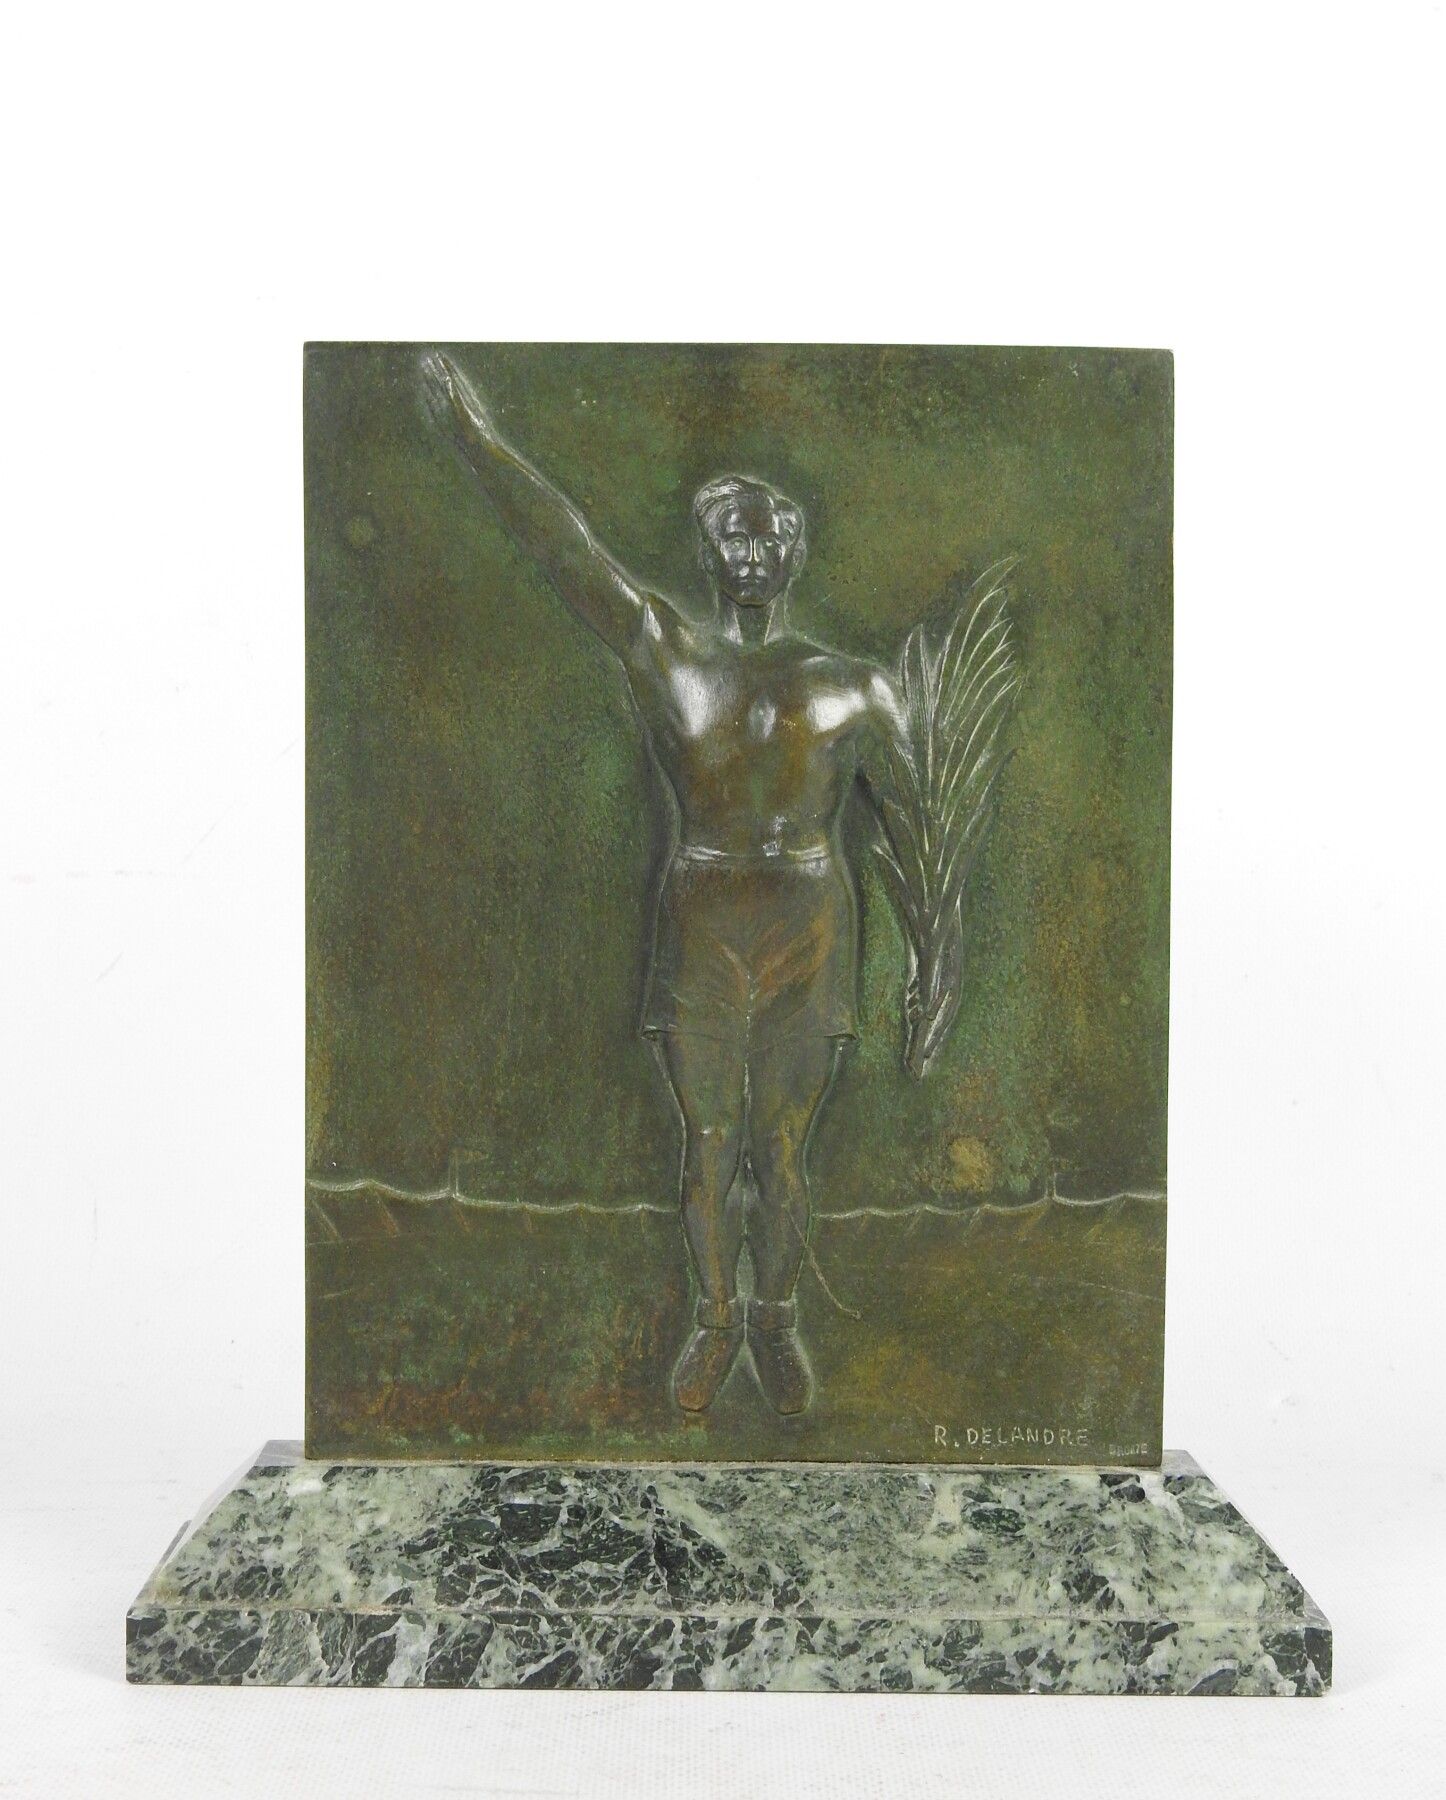 Null 罗伯特-德兰特（1879-1961）：带有古董光泽的铜牌，以低浮雕方式表现一名胜利的运动员。右下方有签名。大理石底座上。27 x 24厘米。